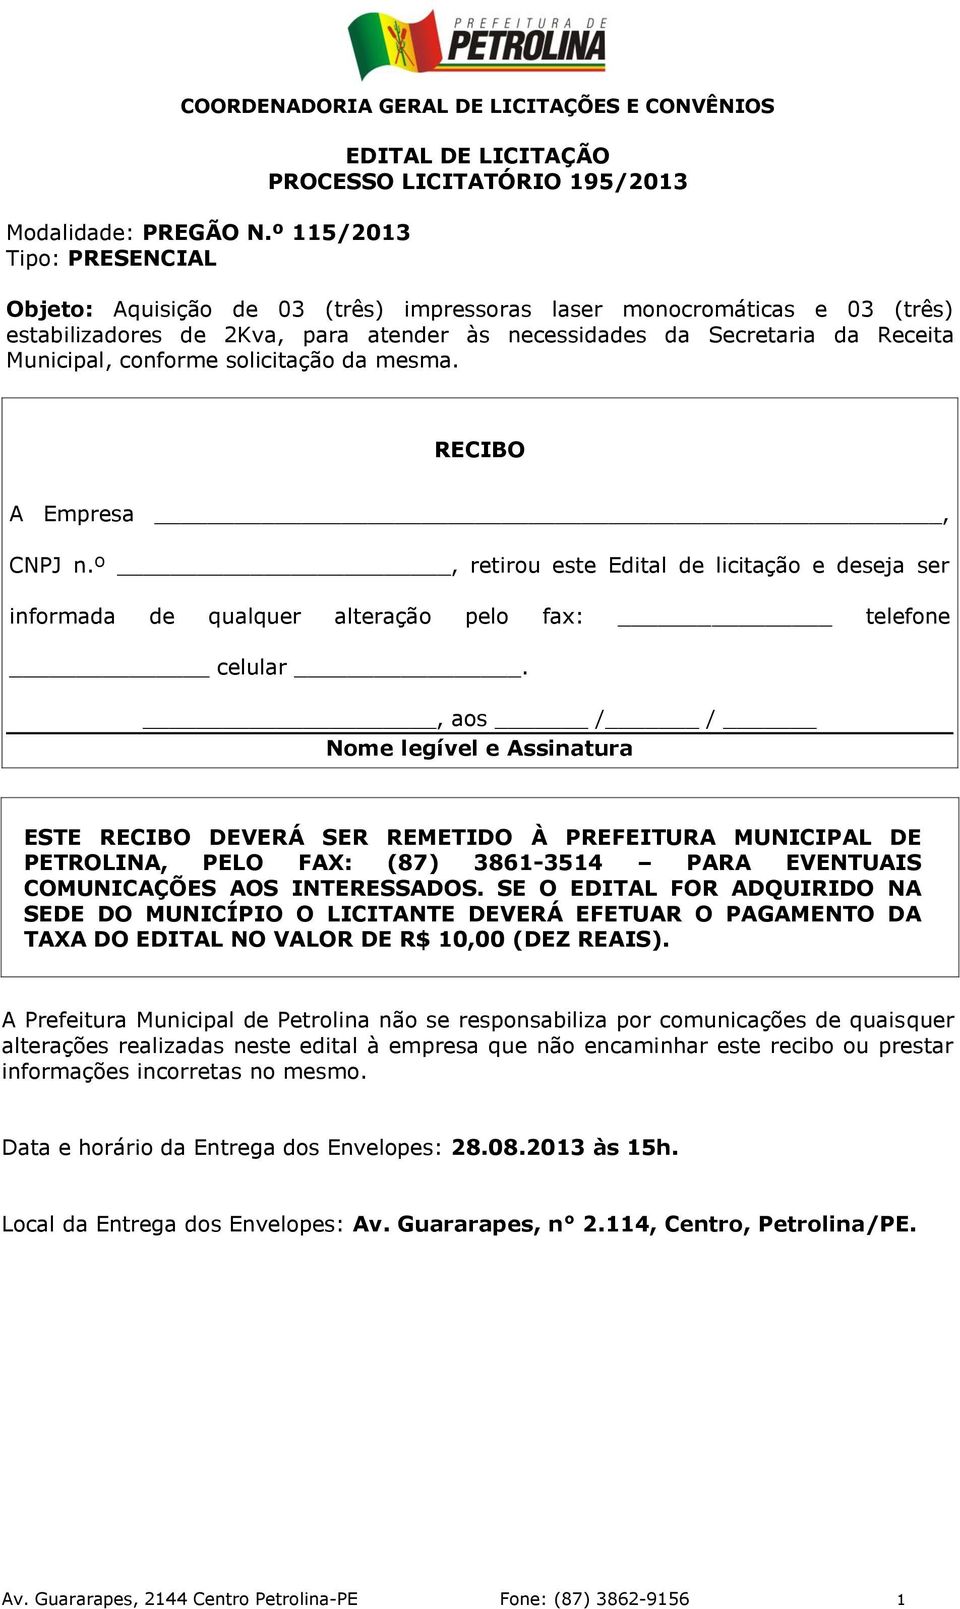 necessidades da Secretaria da Receita Municipal, conforme solicitação da mesma. RECIBO A Empresa, CNPJ n.